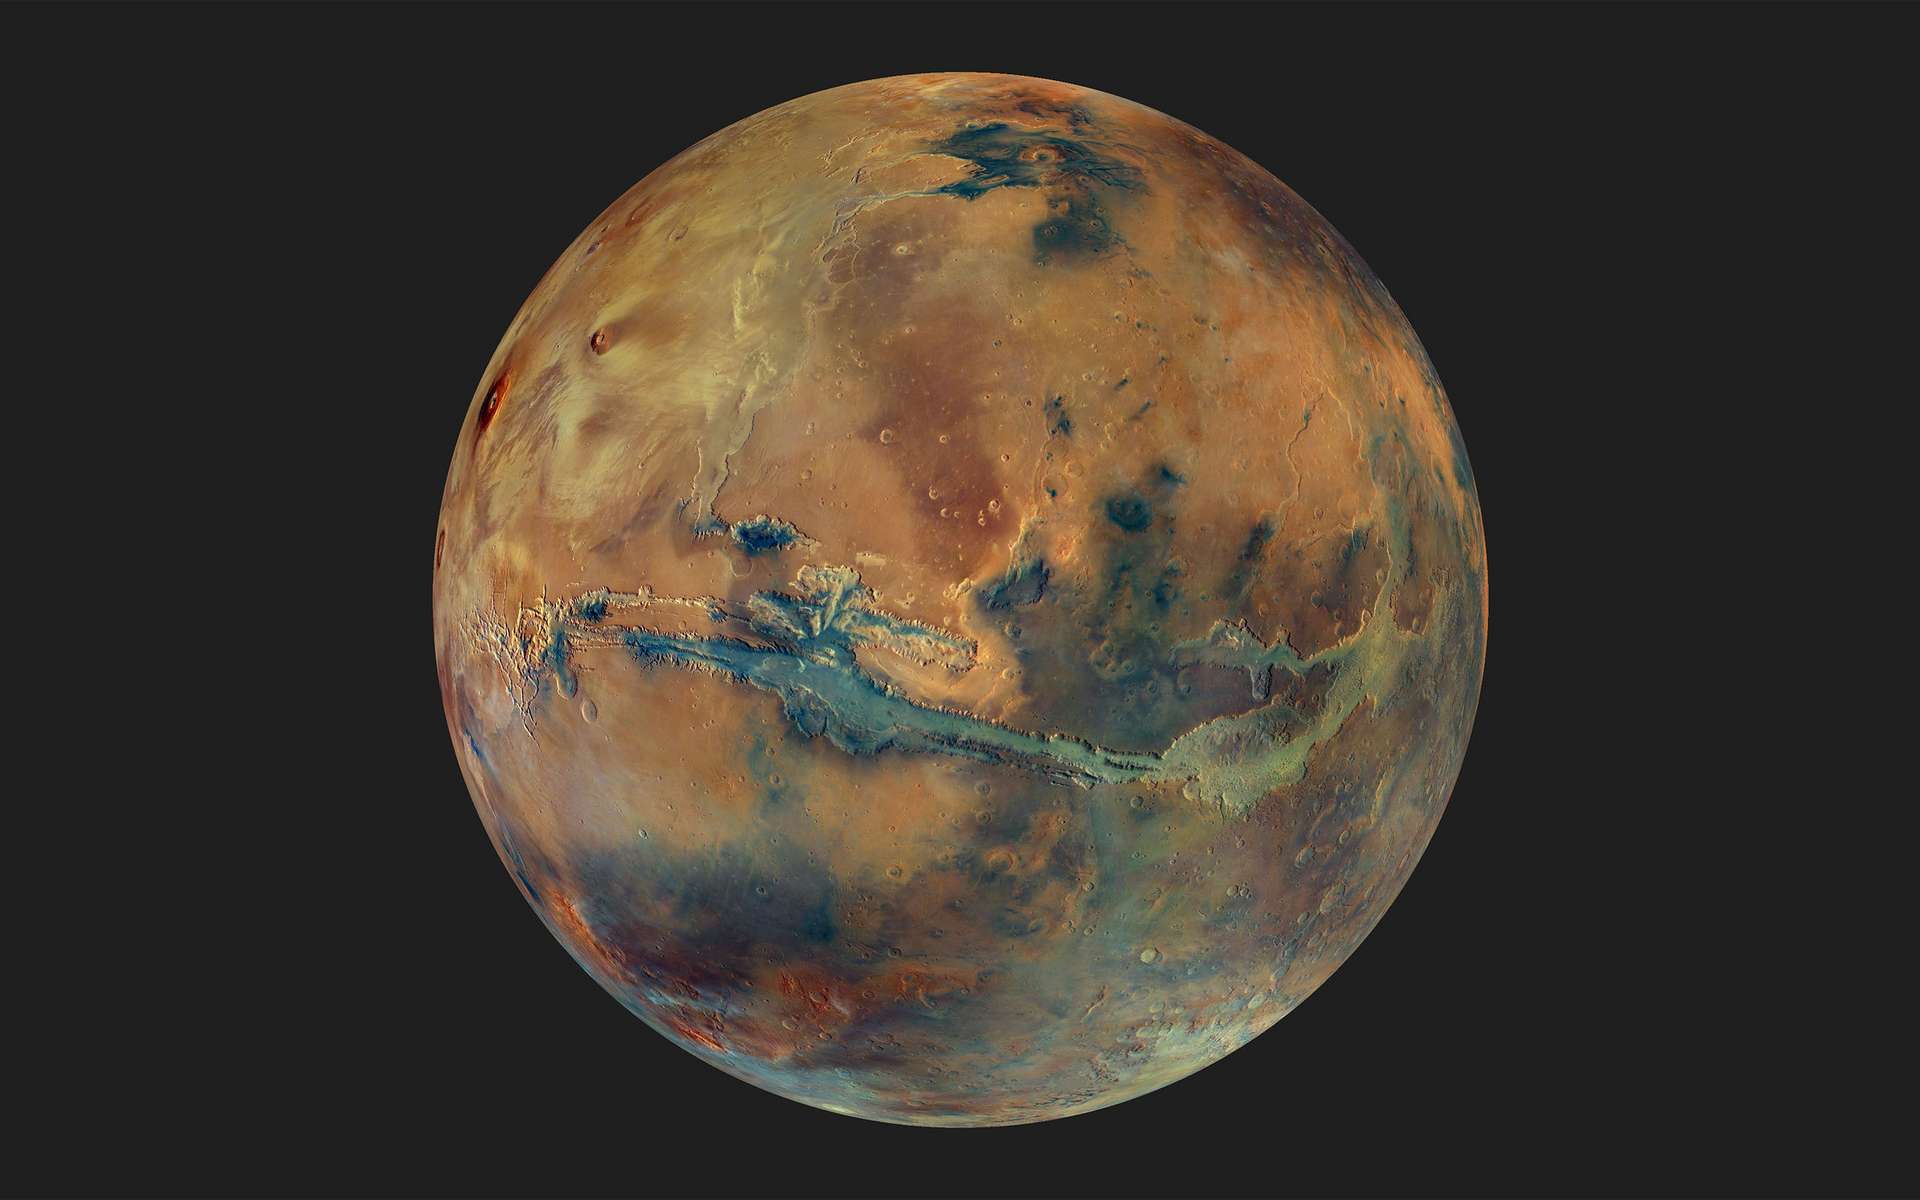 Une image spectaculaire et inédite de Mars pour célébrer les 20 ans de la sonde Mars Express